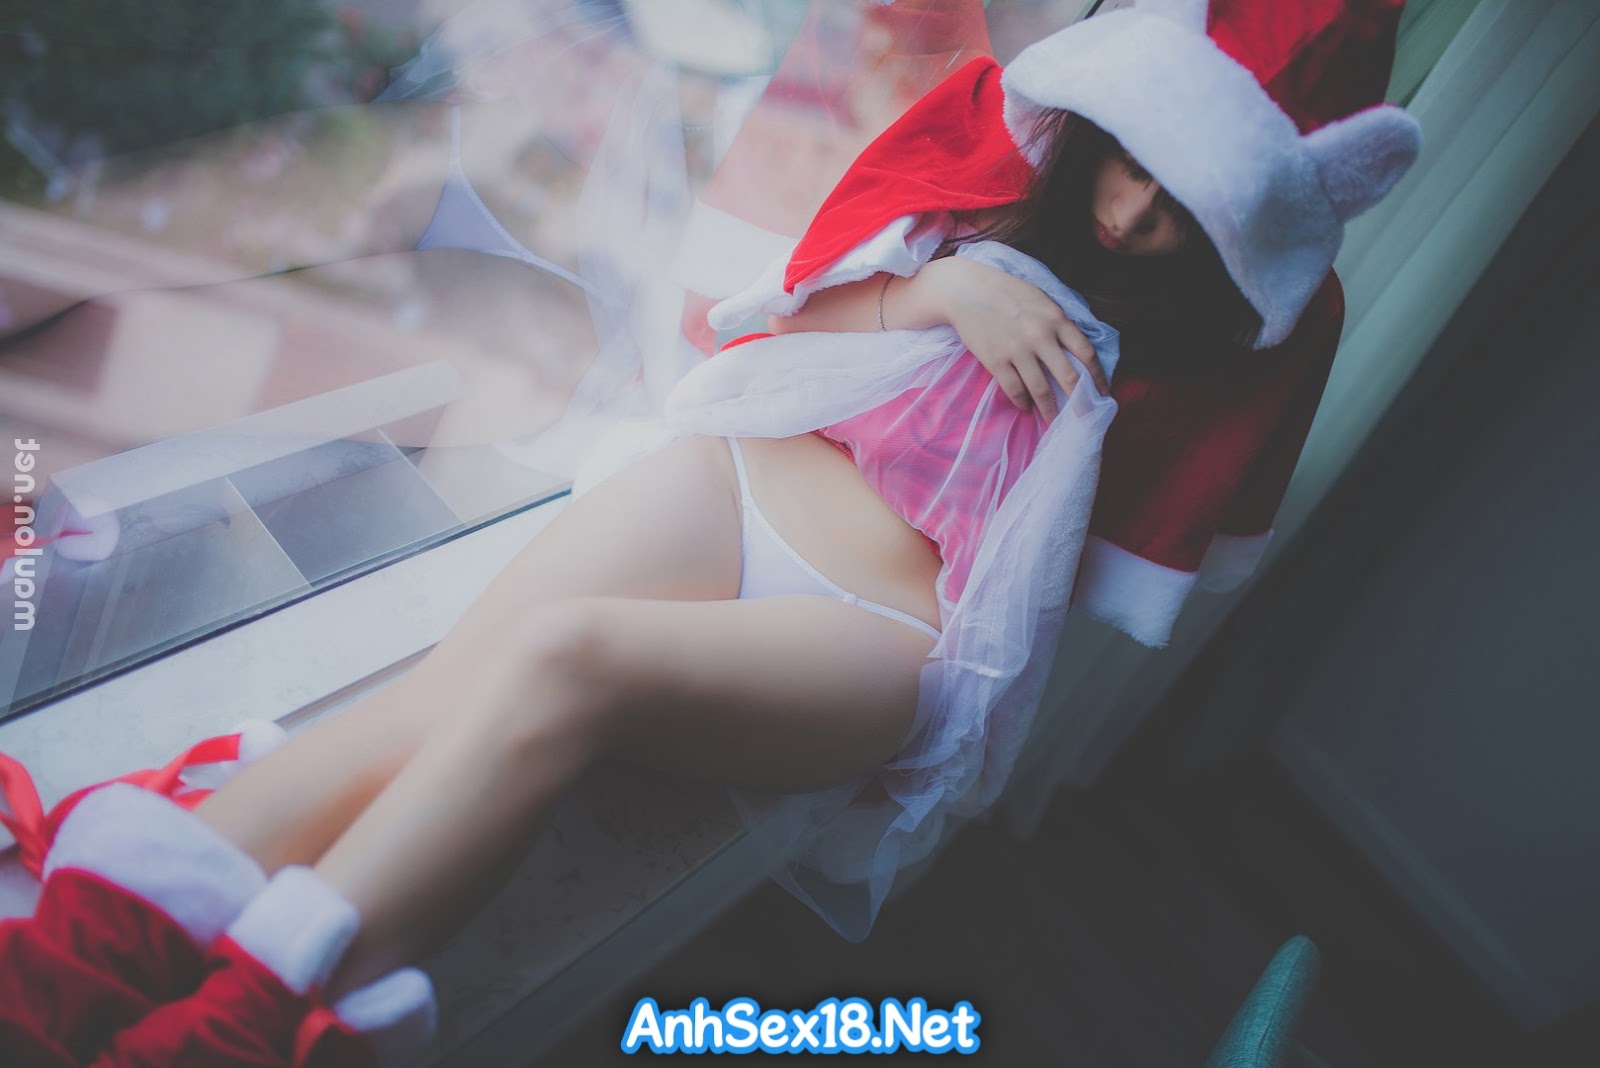 AnhSex18.Net | Giáng sinh em muốn an lành, còn anh muốn ăn lol